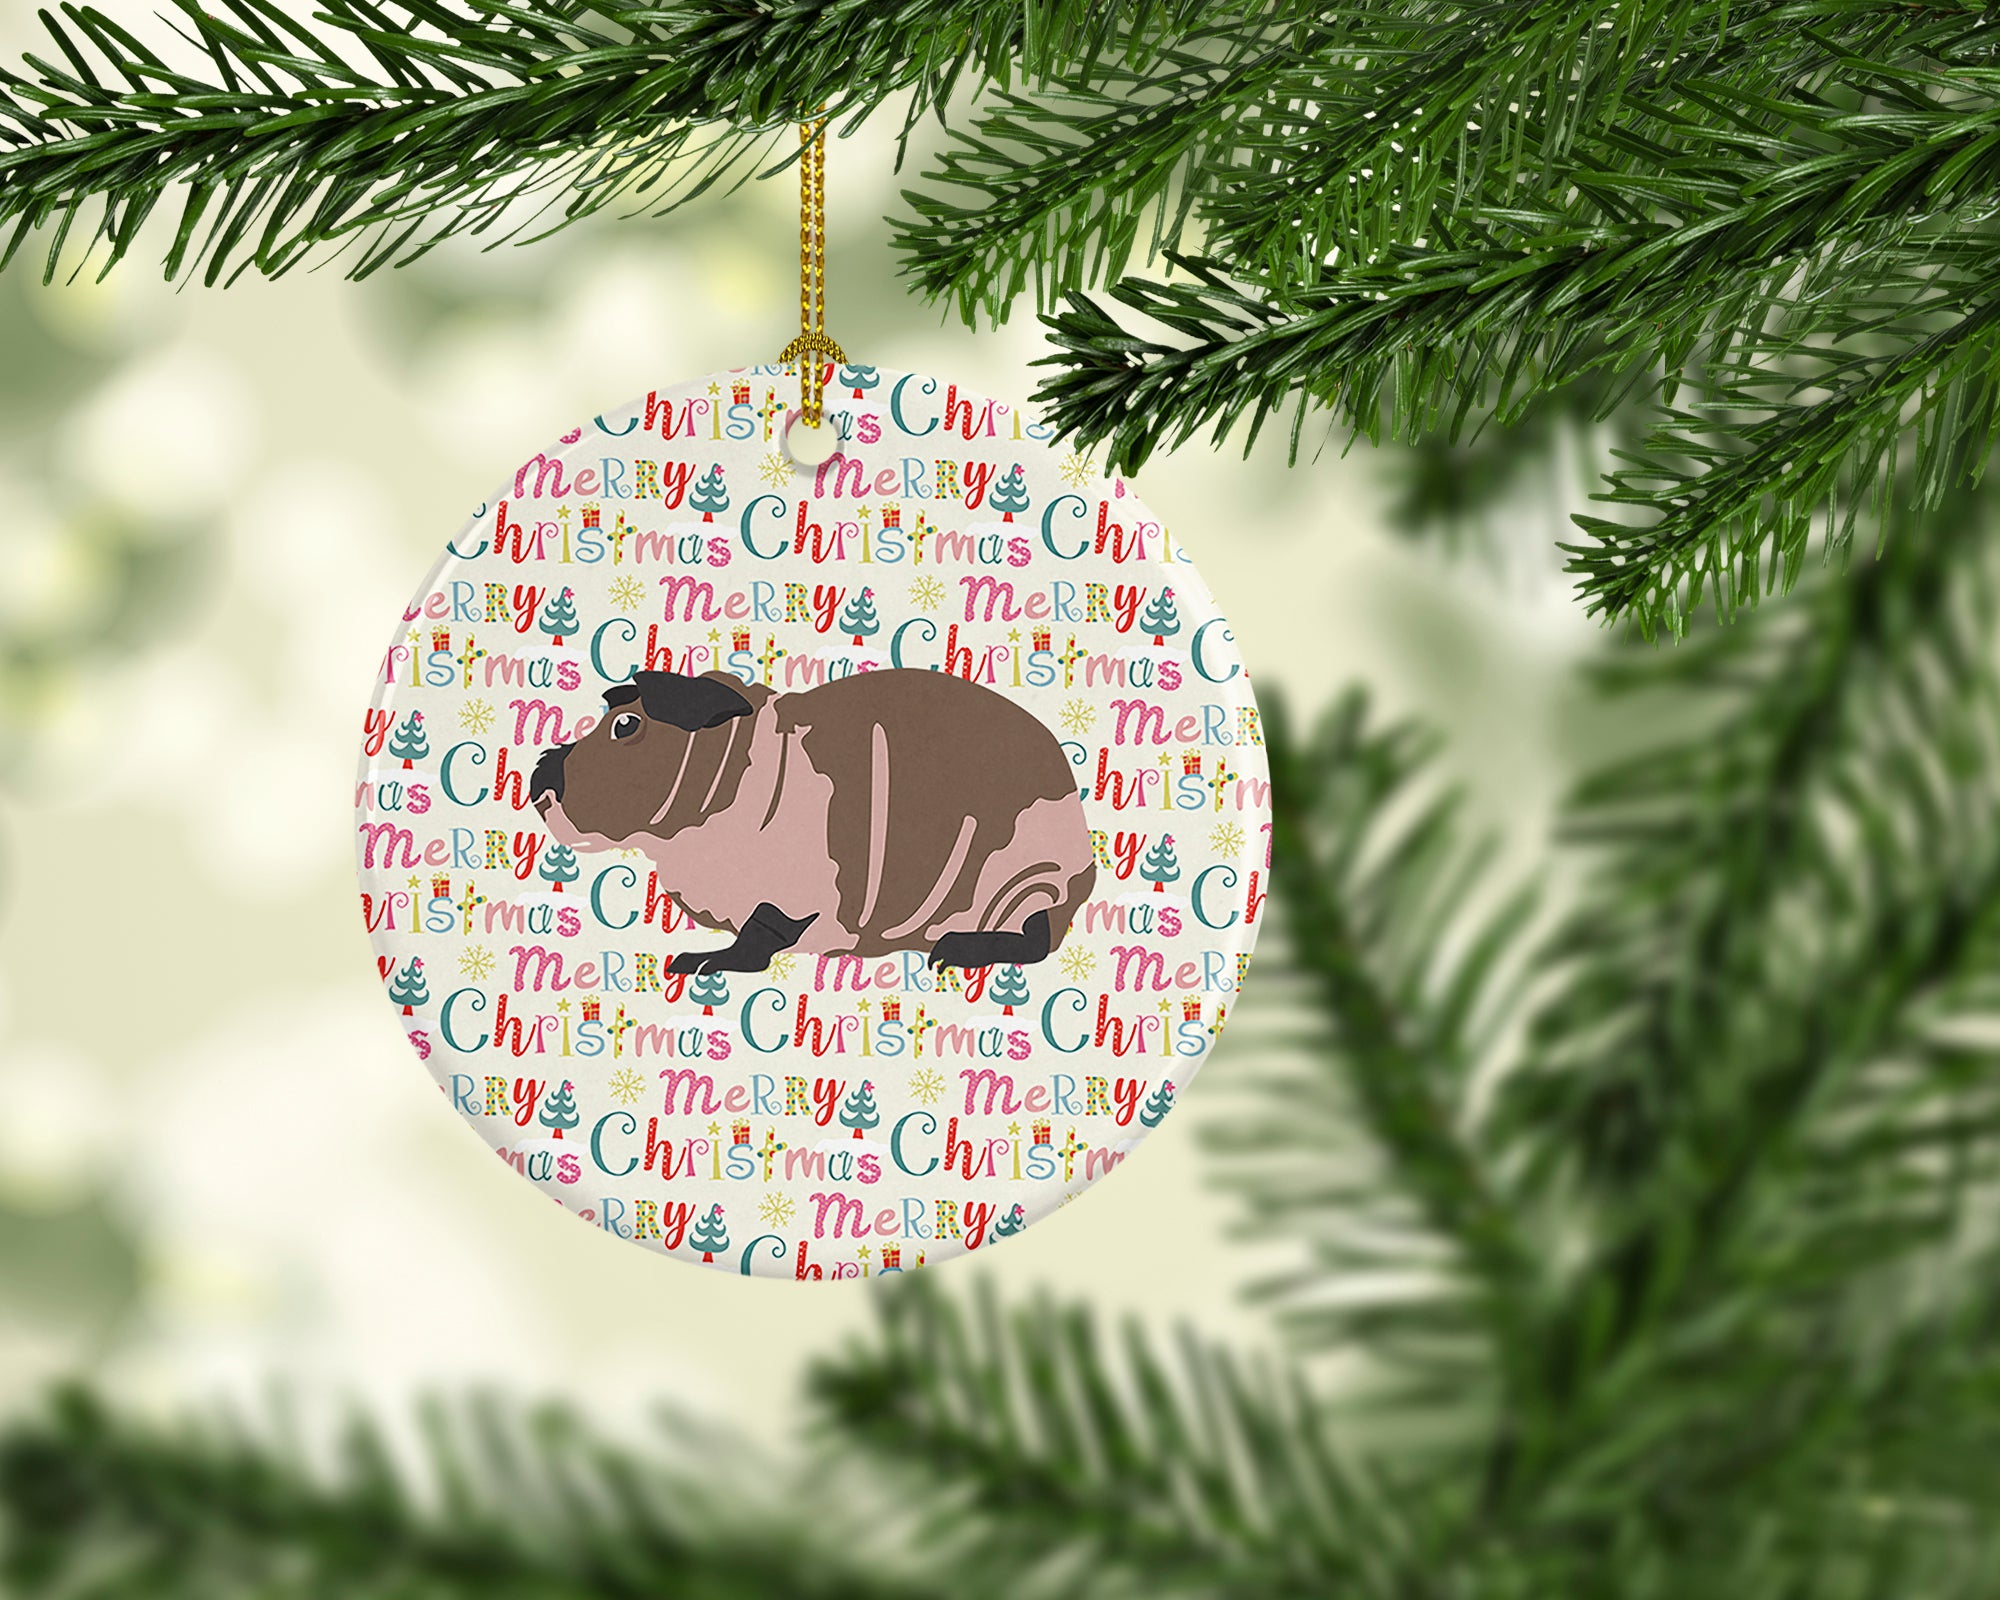 Buy this Skinny Guinea Pig Christmas Ceramic Ornament